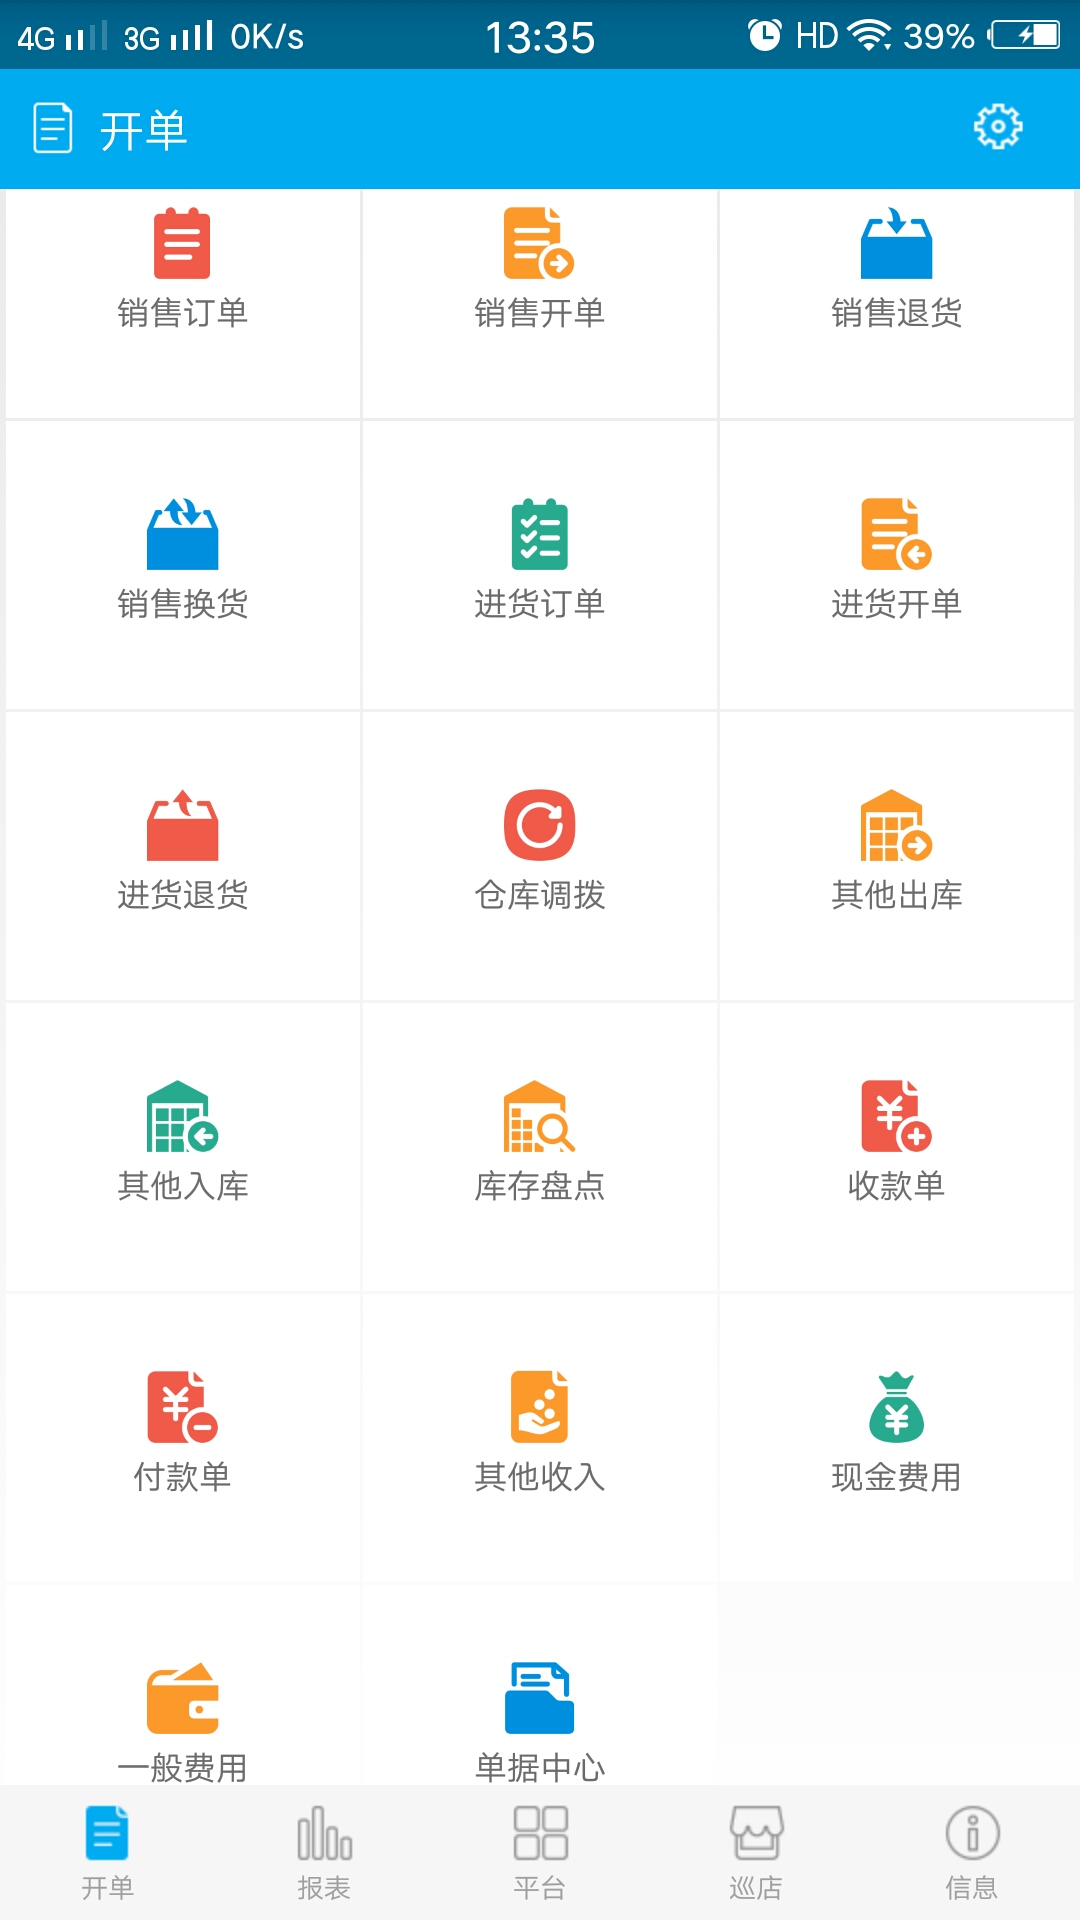 台州管家婆软件 管家婆物联通 管家婆手机板  中小企业全新移动办公方式